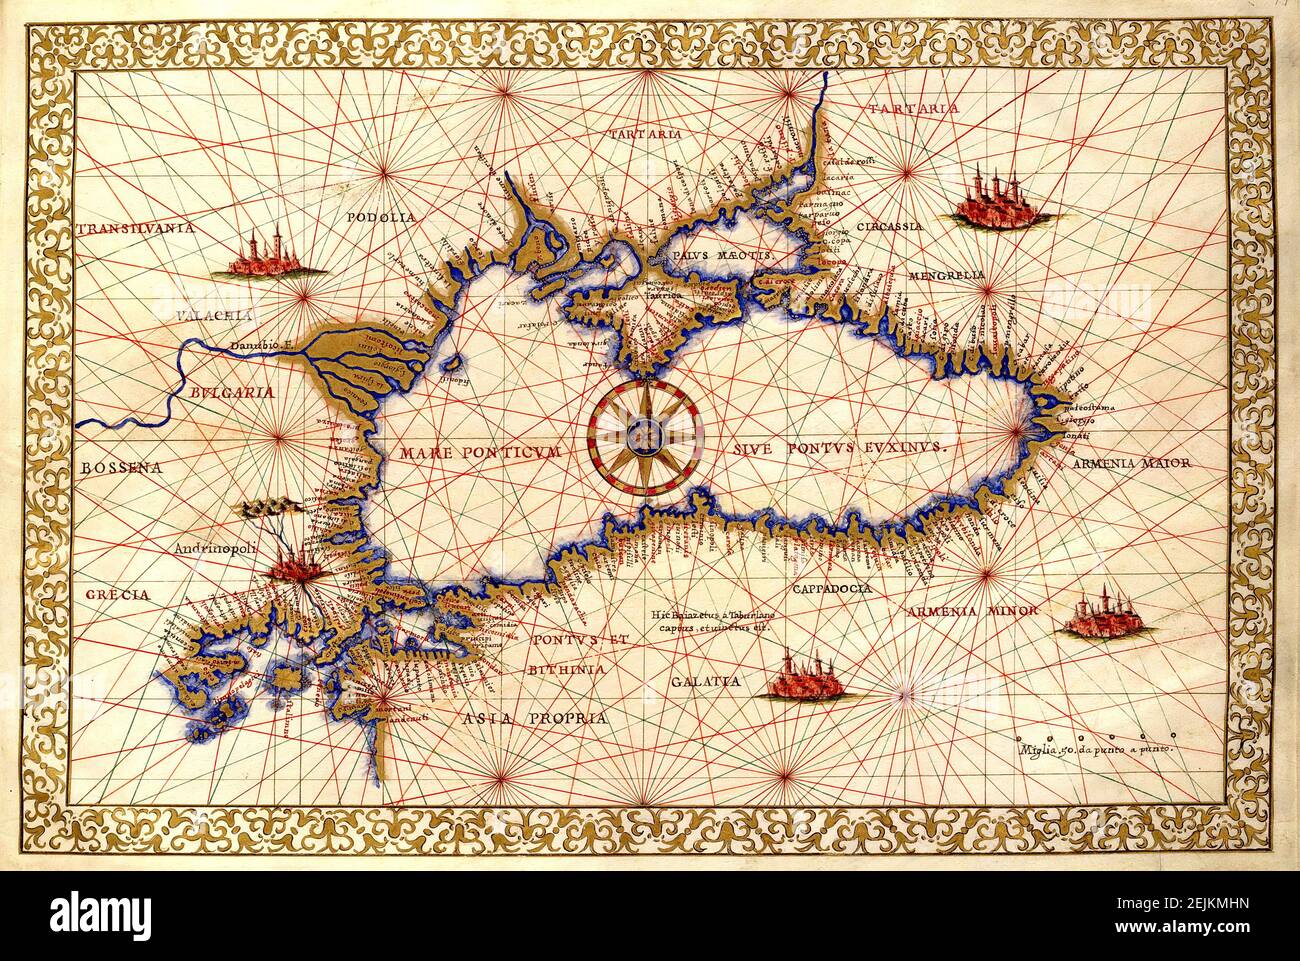 Carte de la région de la mer Noire dans le sud-est de l'Europe. La carte a été publiée par Francesco Ghisolfi (1533-1560). Banque D'Images